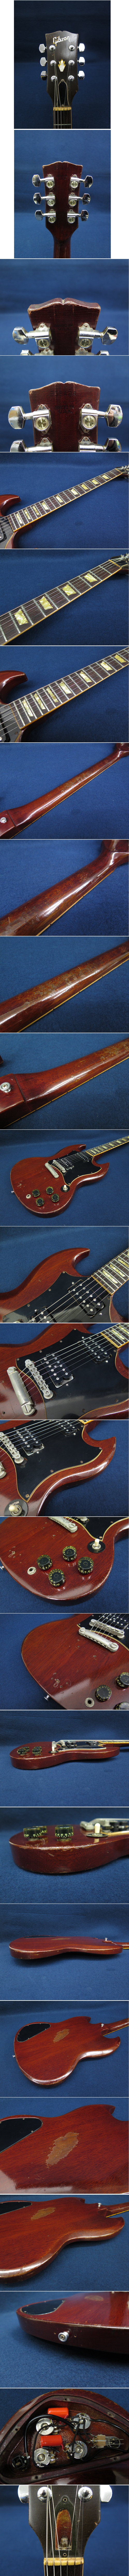 【大人気通販】★ギター193 Gibson SG 963434 MADE IN U.S.A★ギブソン/消費税0円 ギブソン